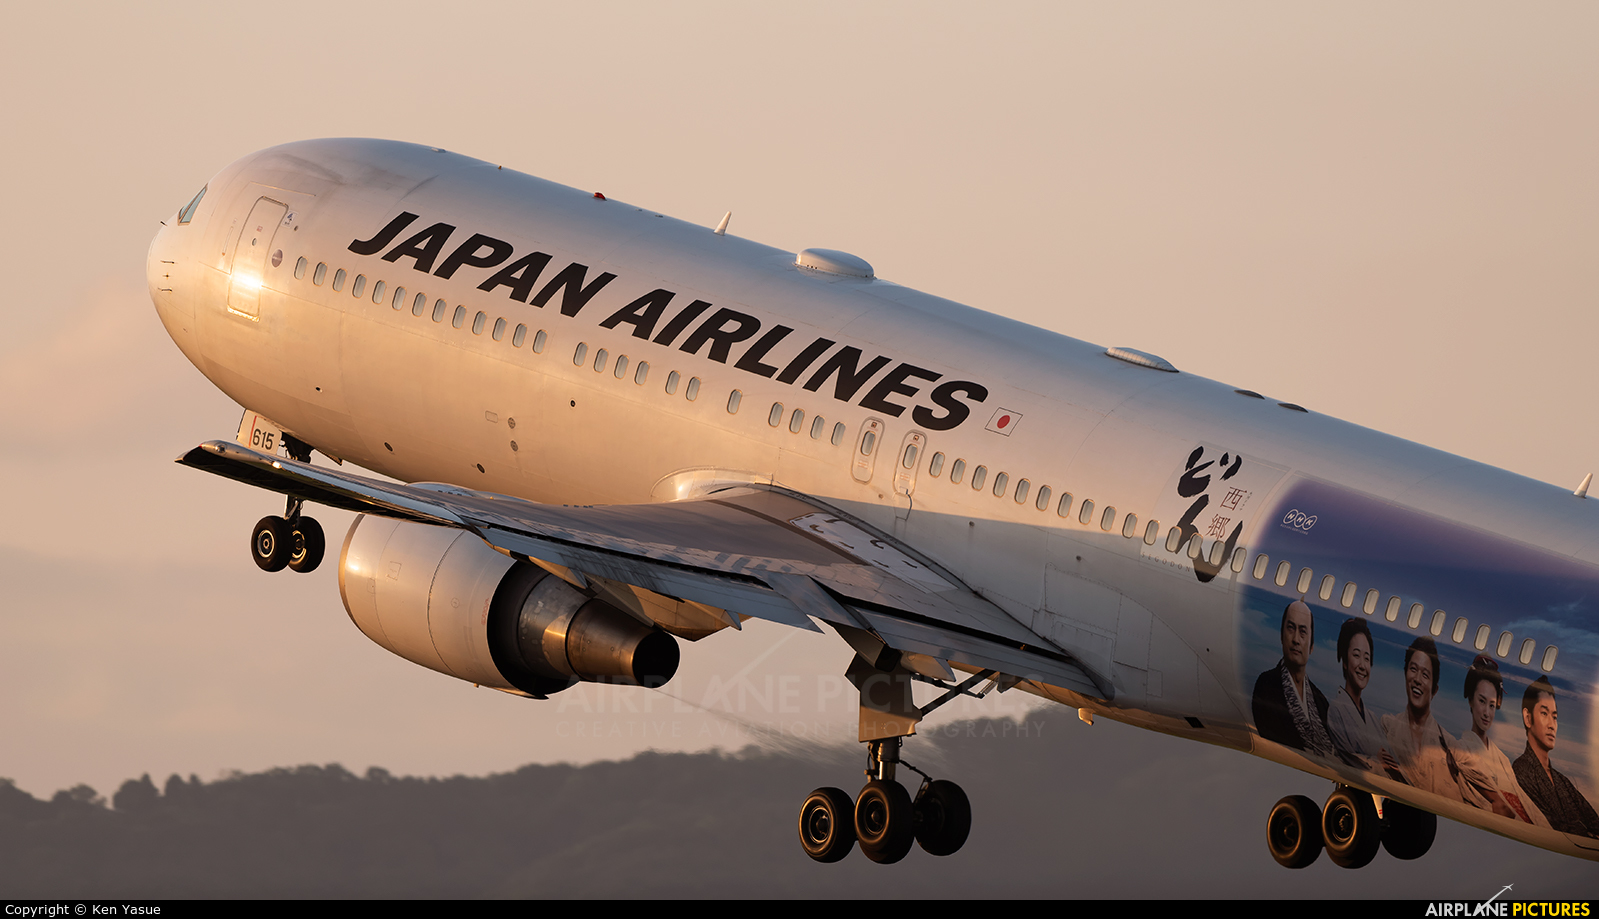 JAL - Japan Airlines JA615J aircraft at Osaka - Itami Intl